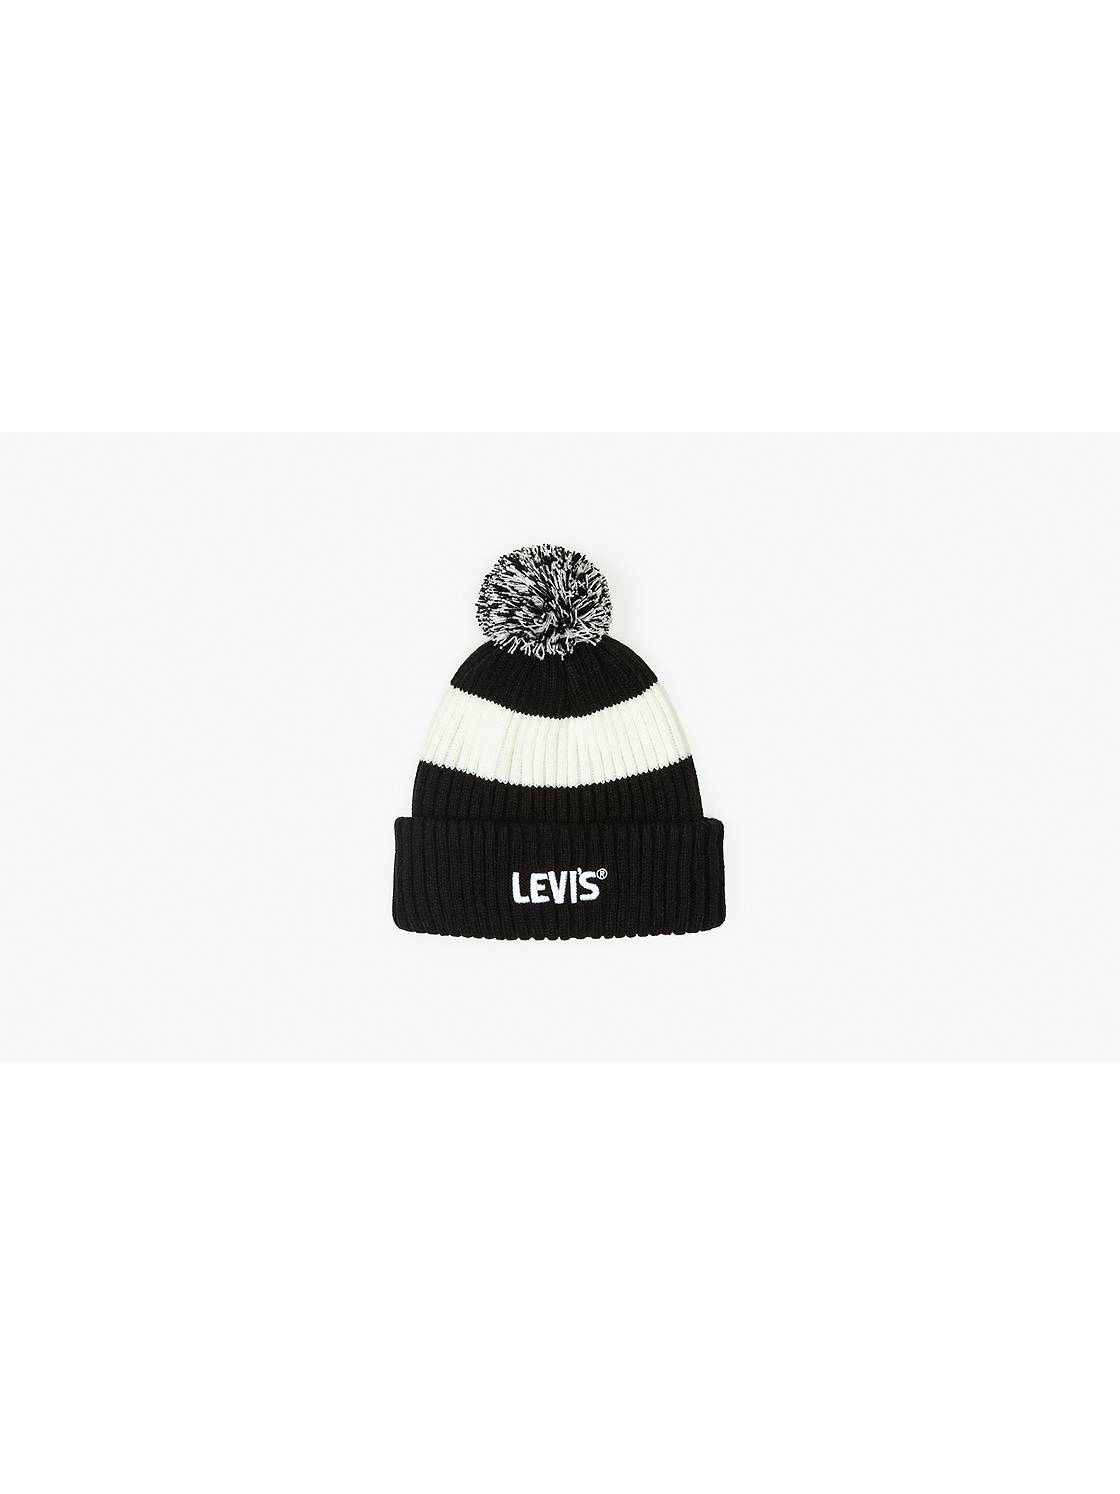 Levi'S Seasonal LV 1028 FLL